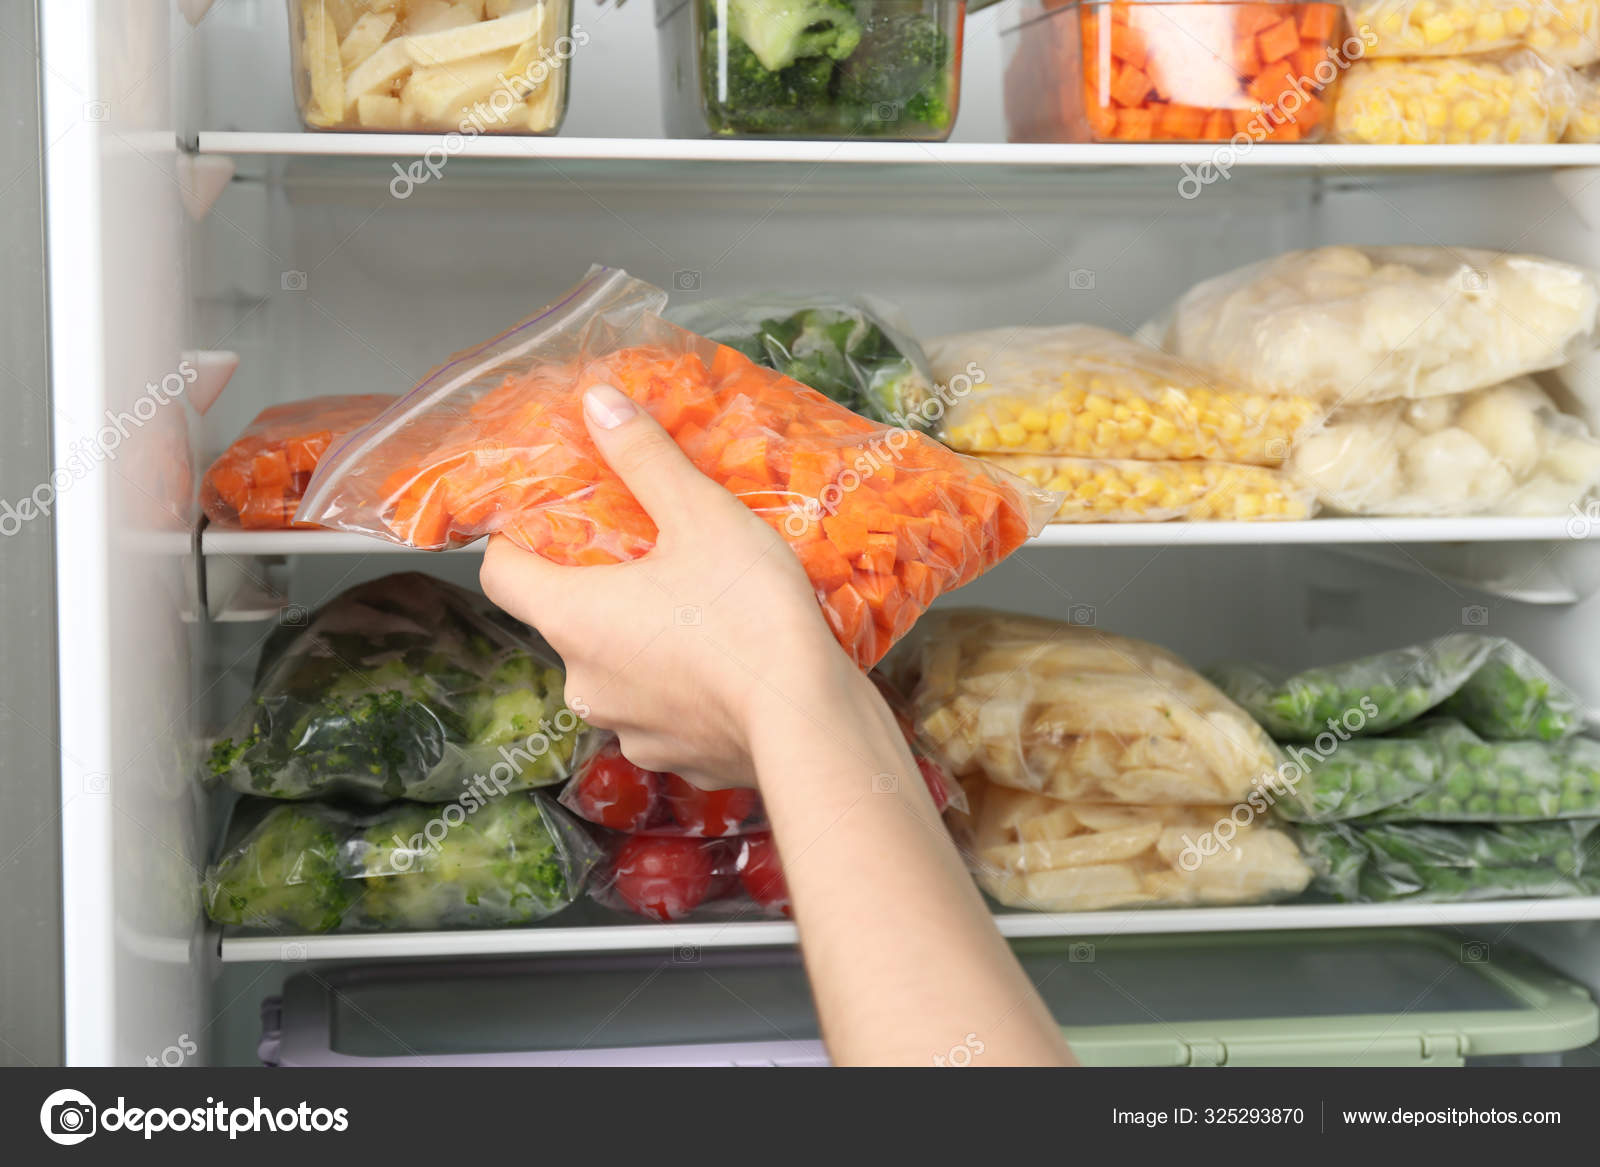 Овощи в заморозке. Хранение продуктов. Овощи для заморозки. Овощи в морозилке. Заготовки в морозилку овощи.